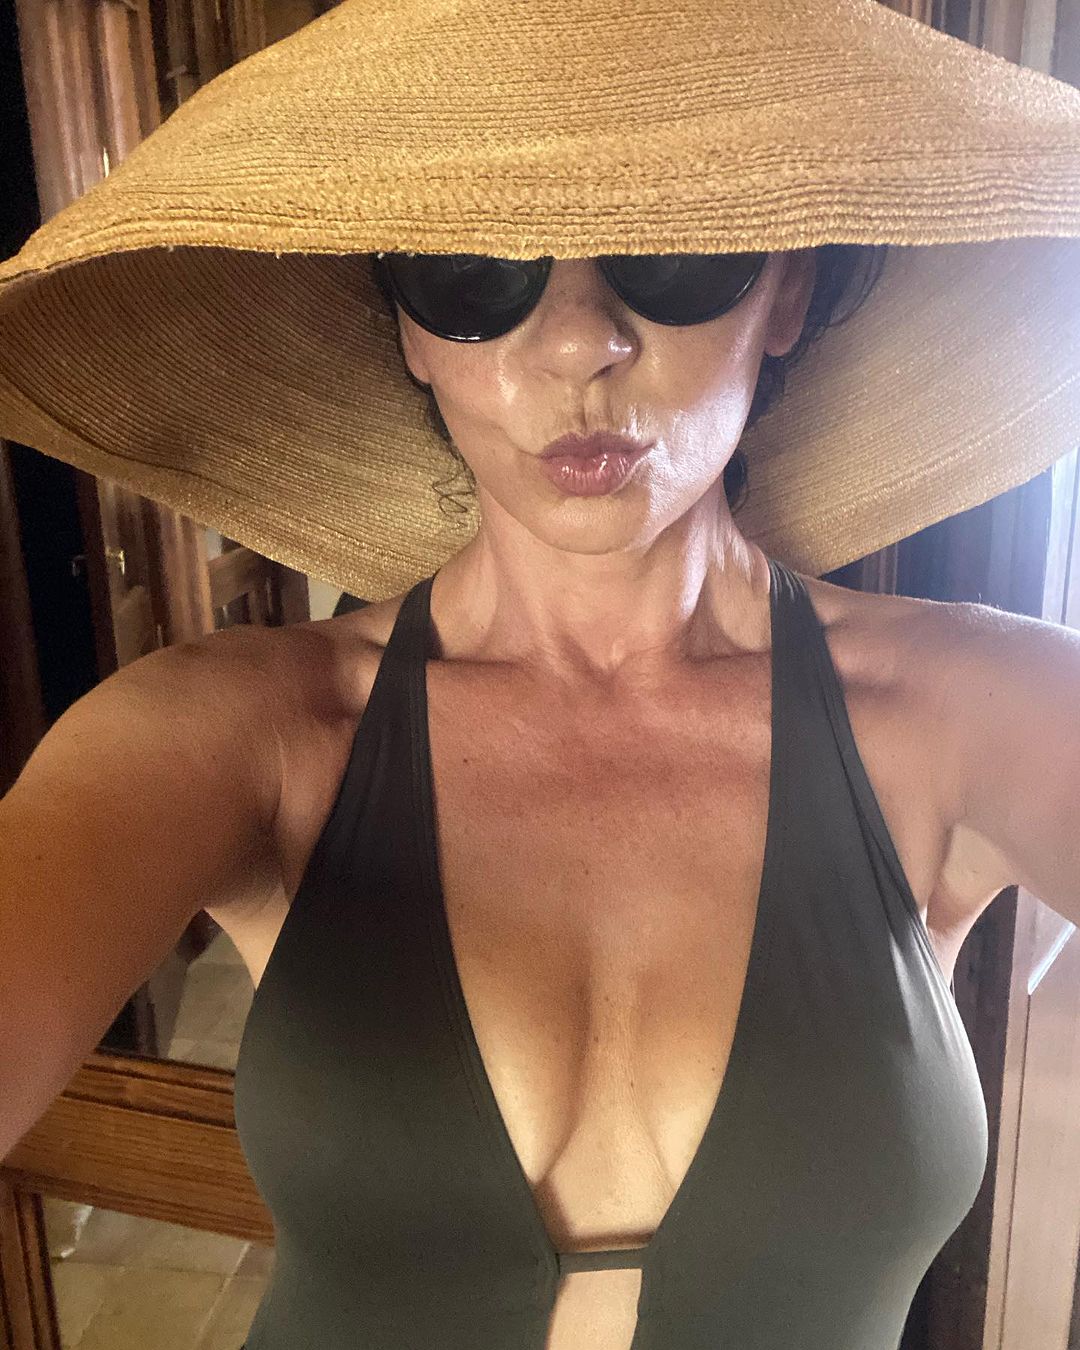 Catherine Zeta Jones Selfies in Her Swimsuit!